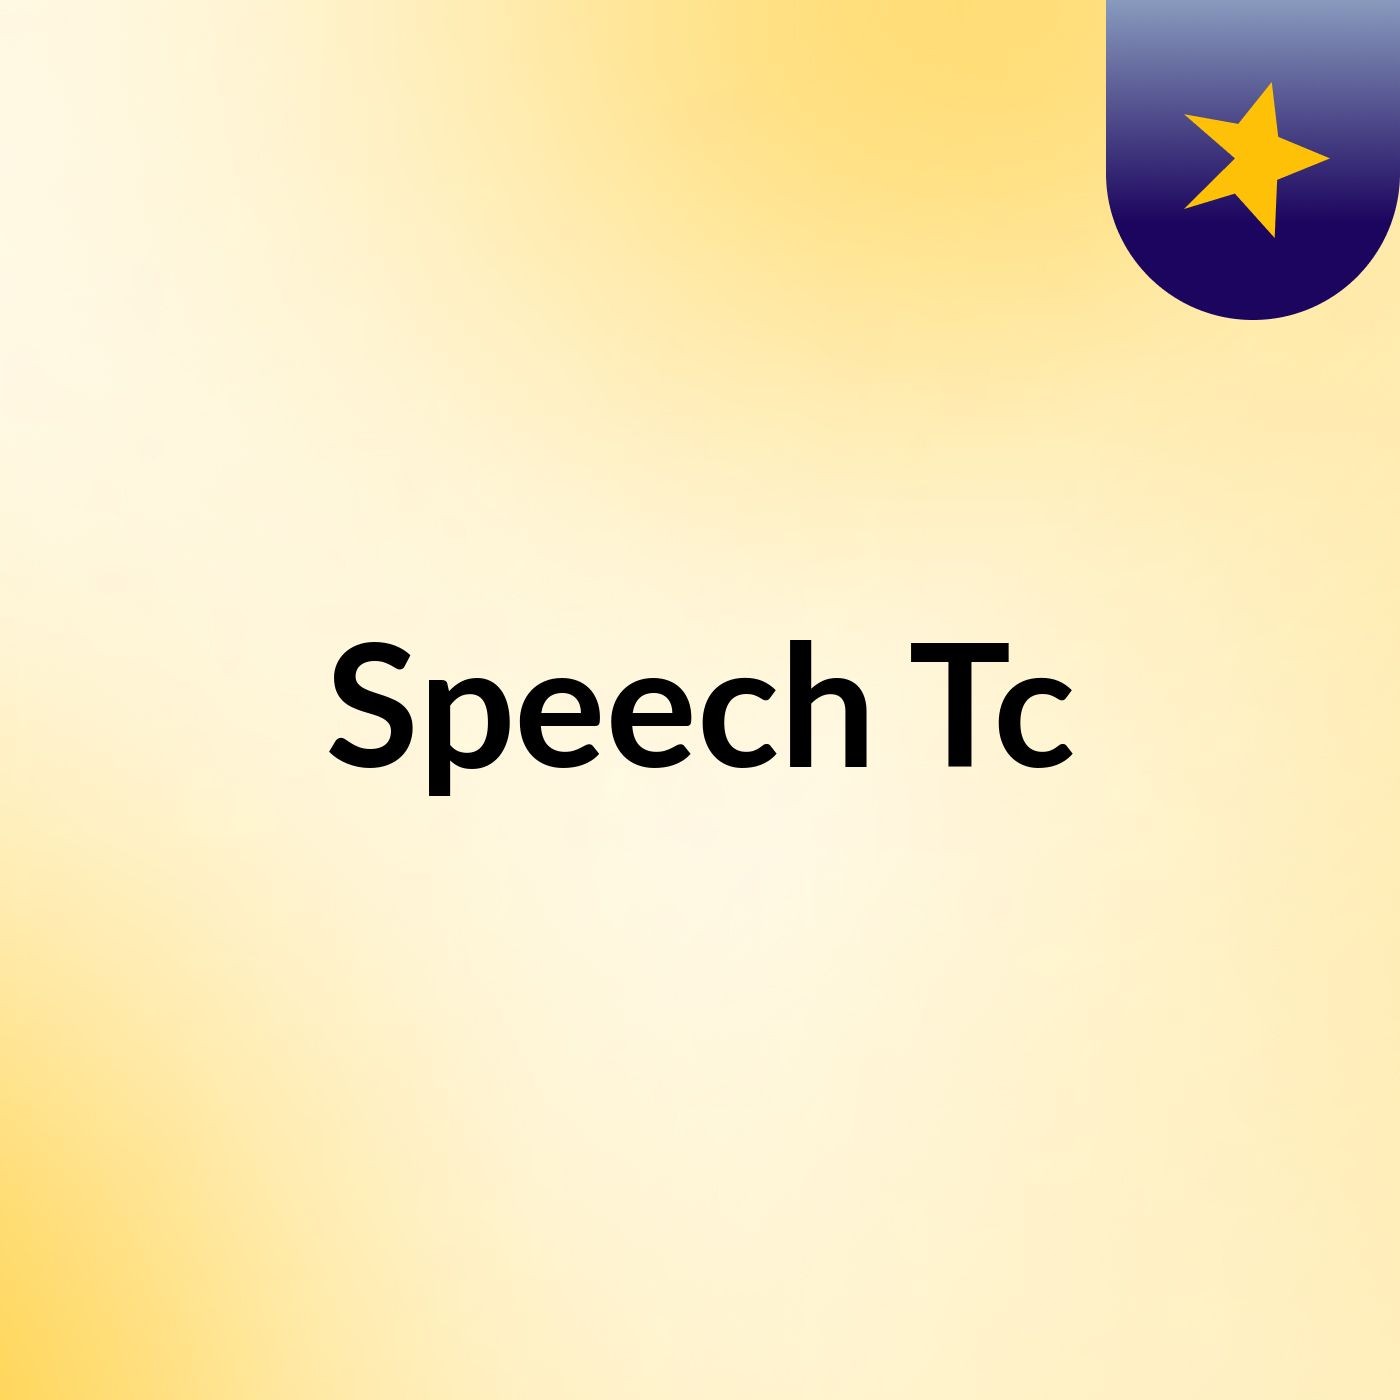 Speech Tc